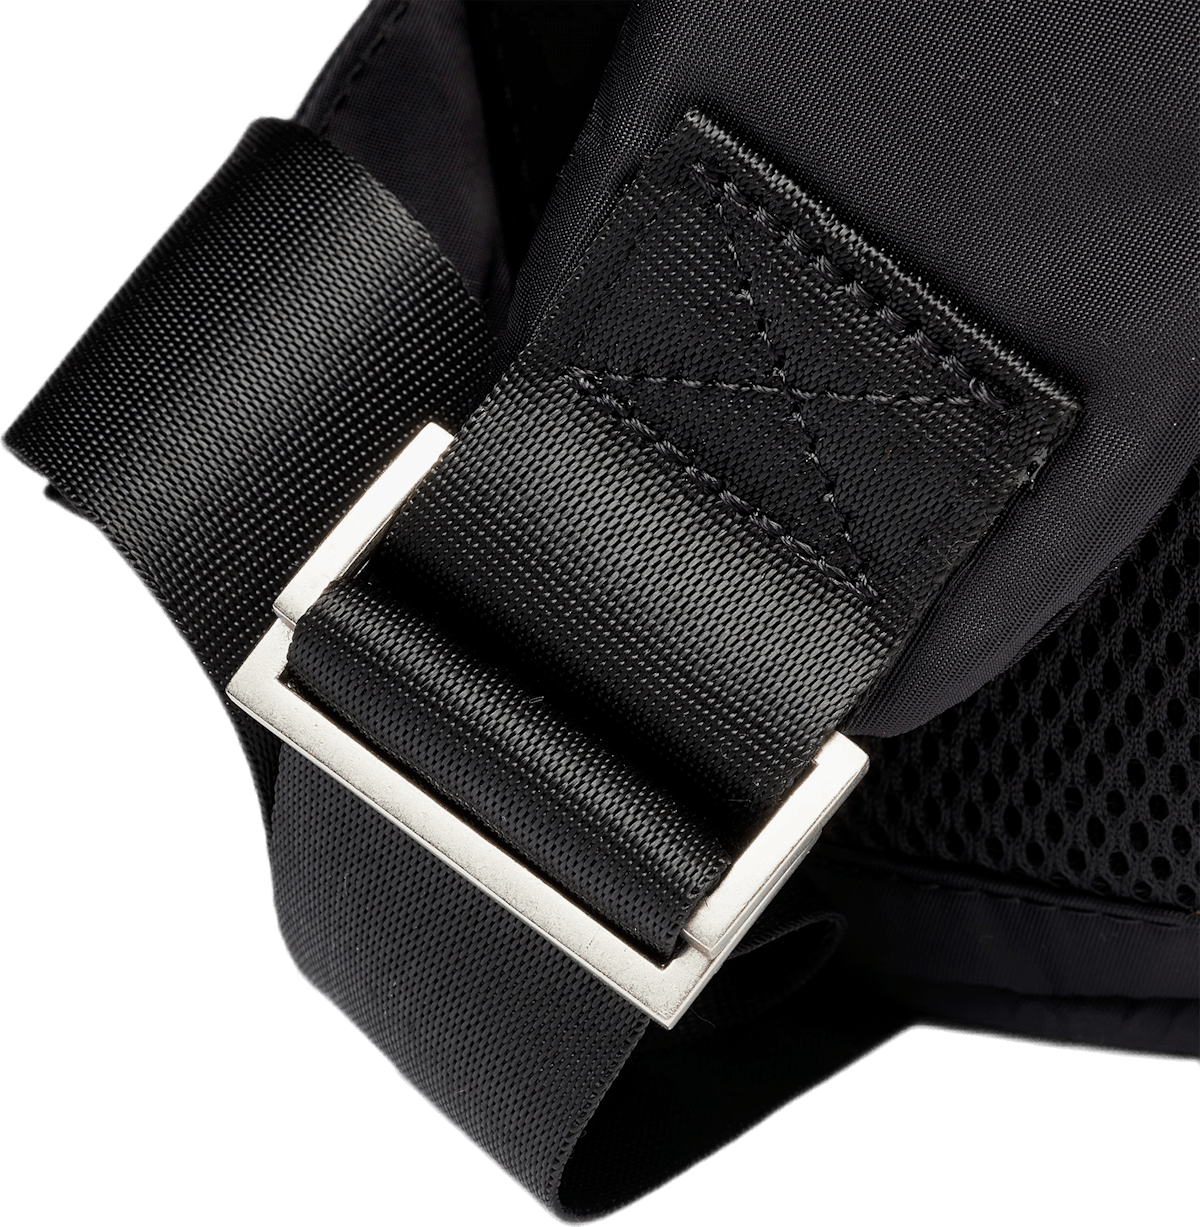 Curve Flap Backpack Black